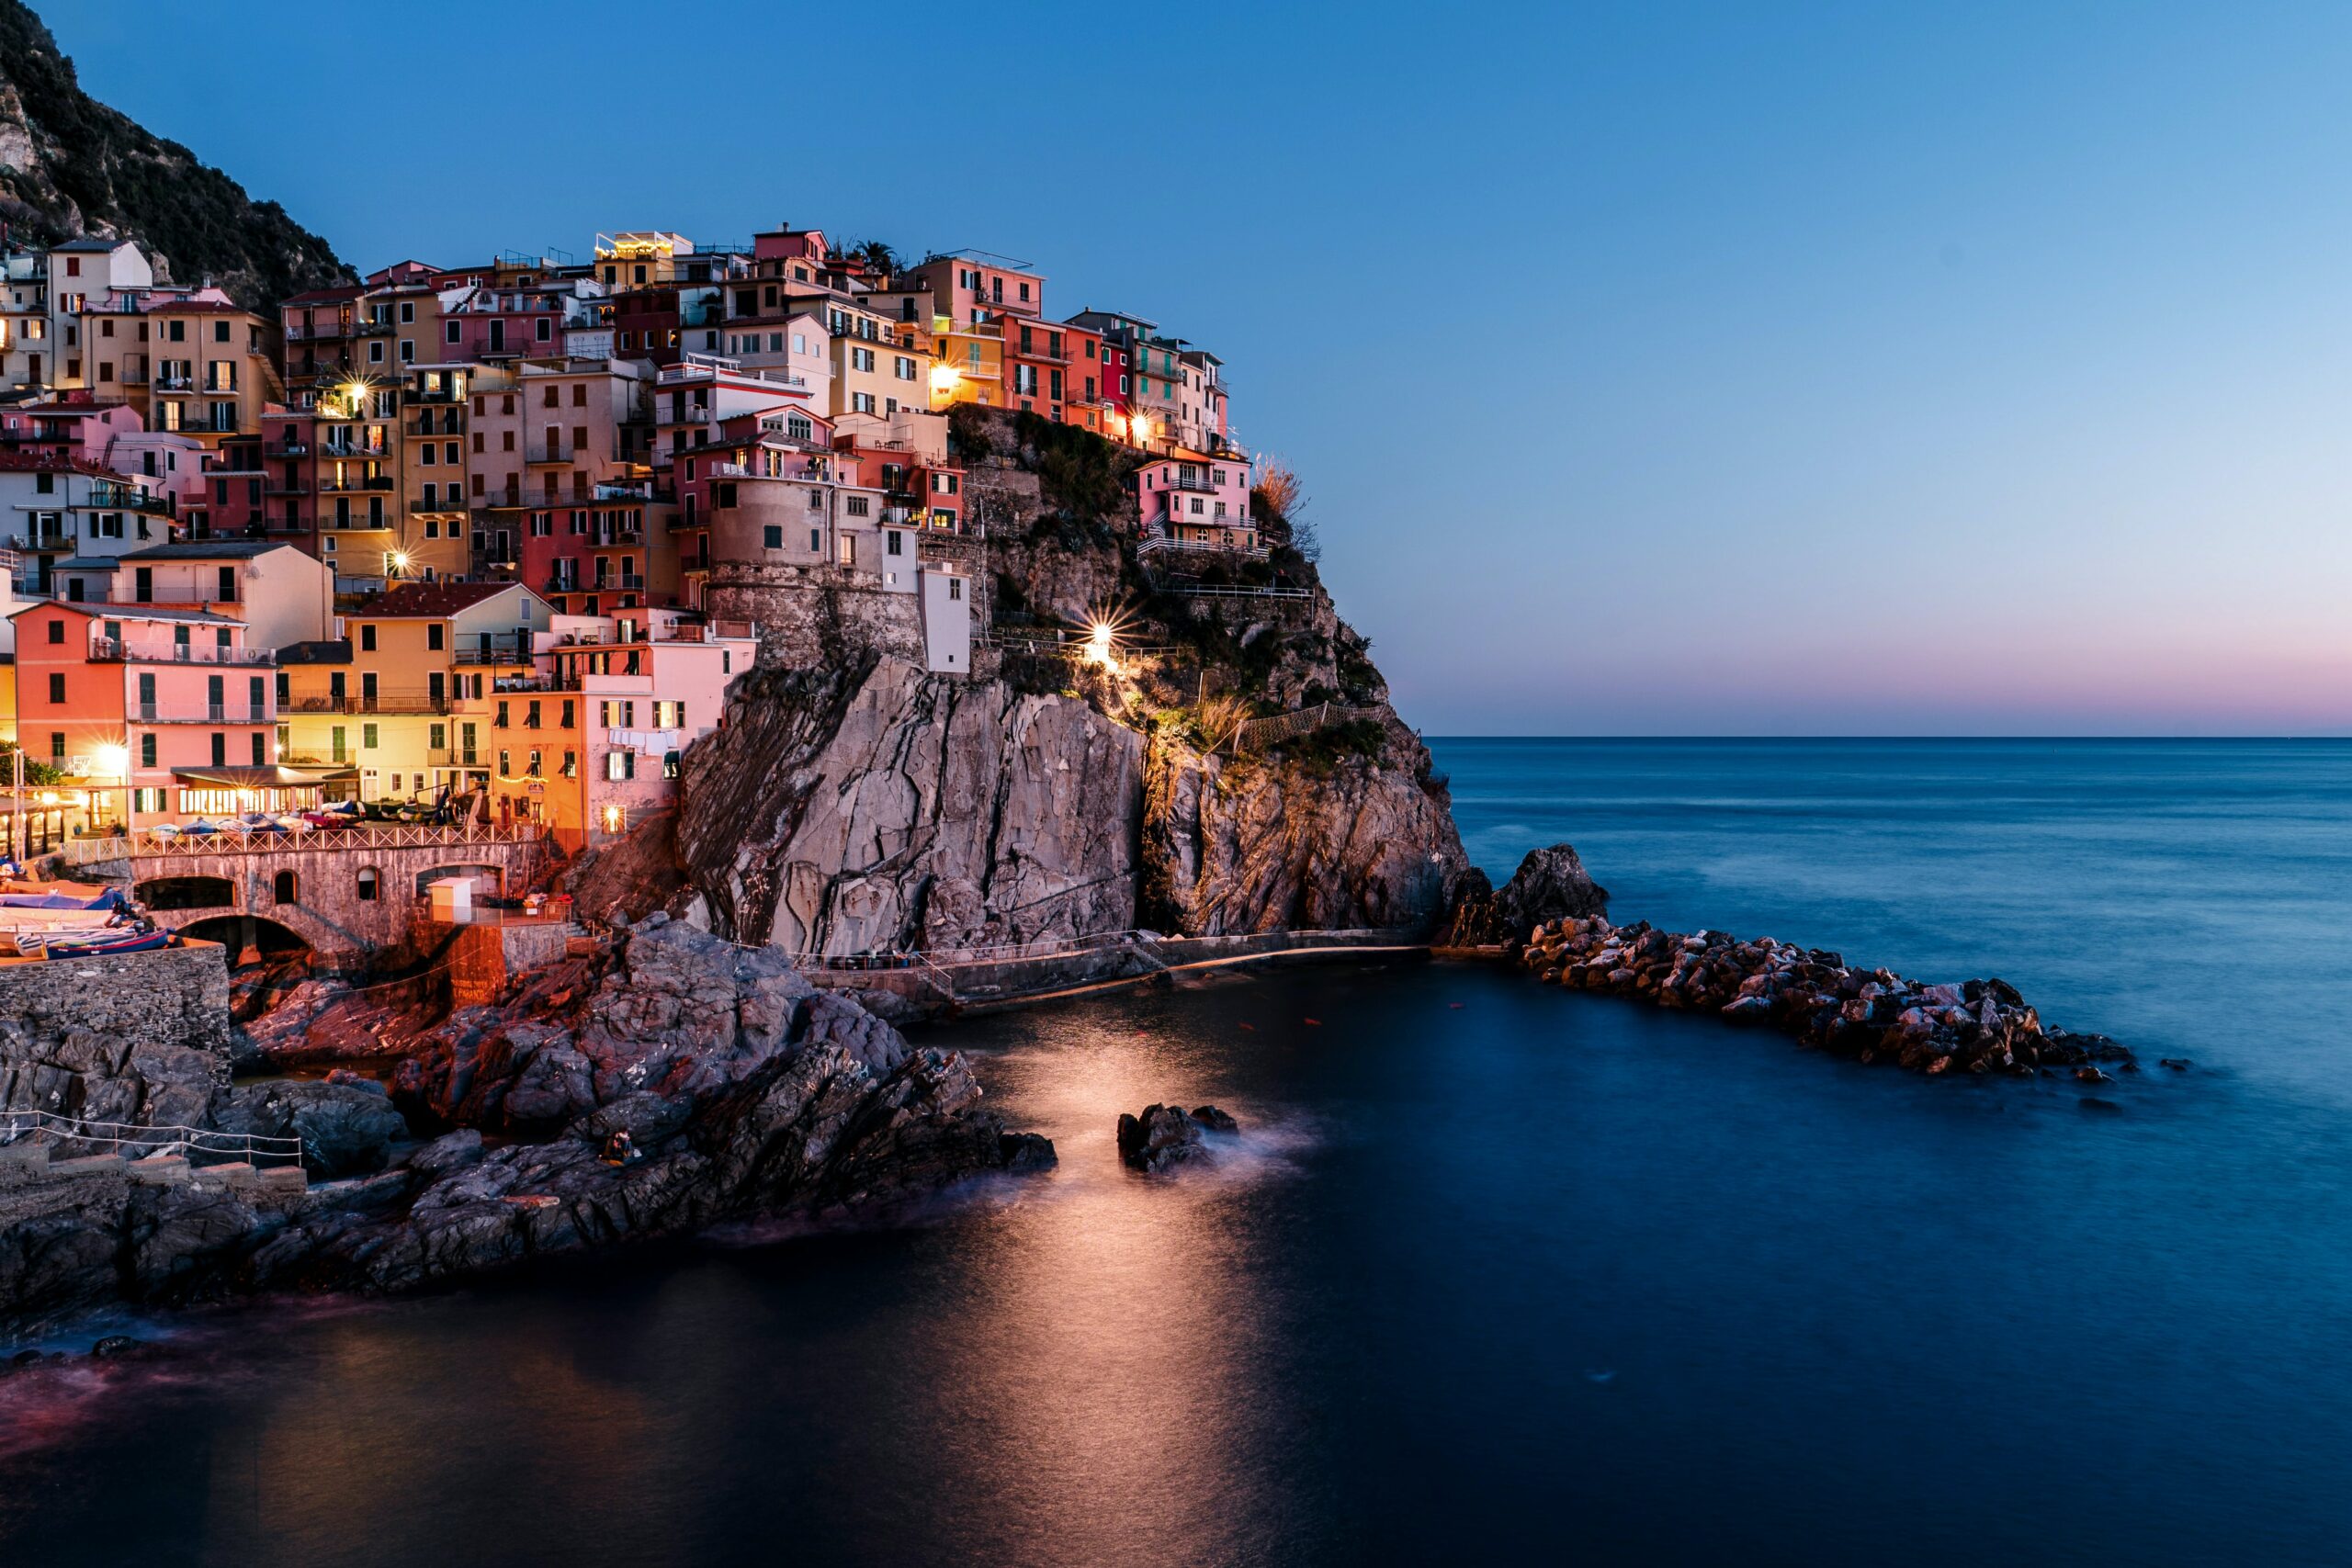 Udělej si výlet do Cinque Terre. Z Vídně do Janova letíš od 700 Kč